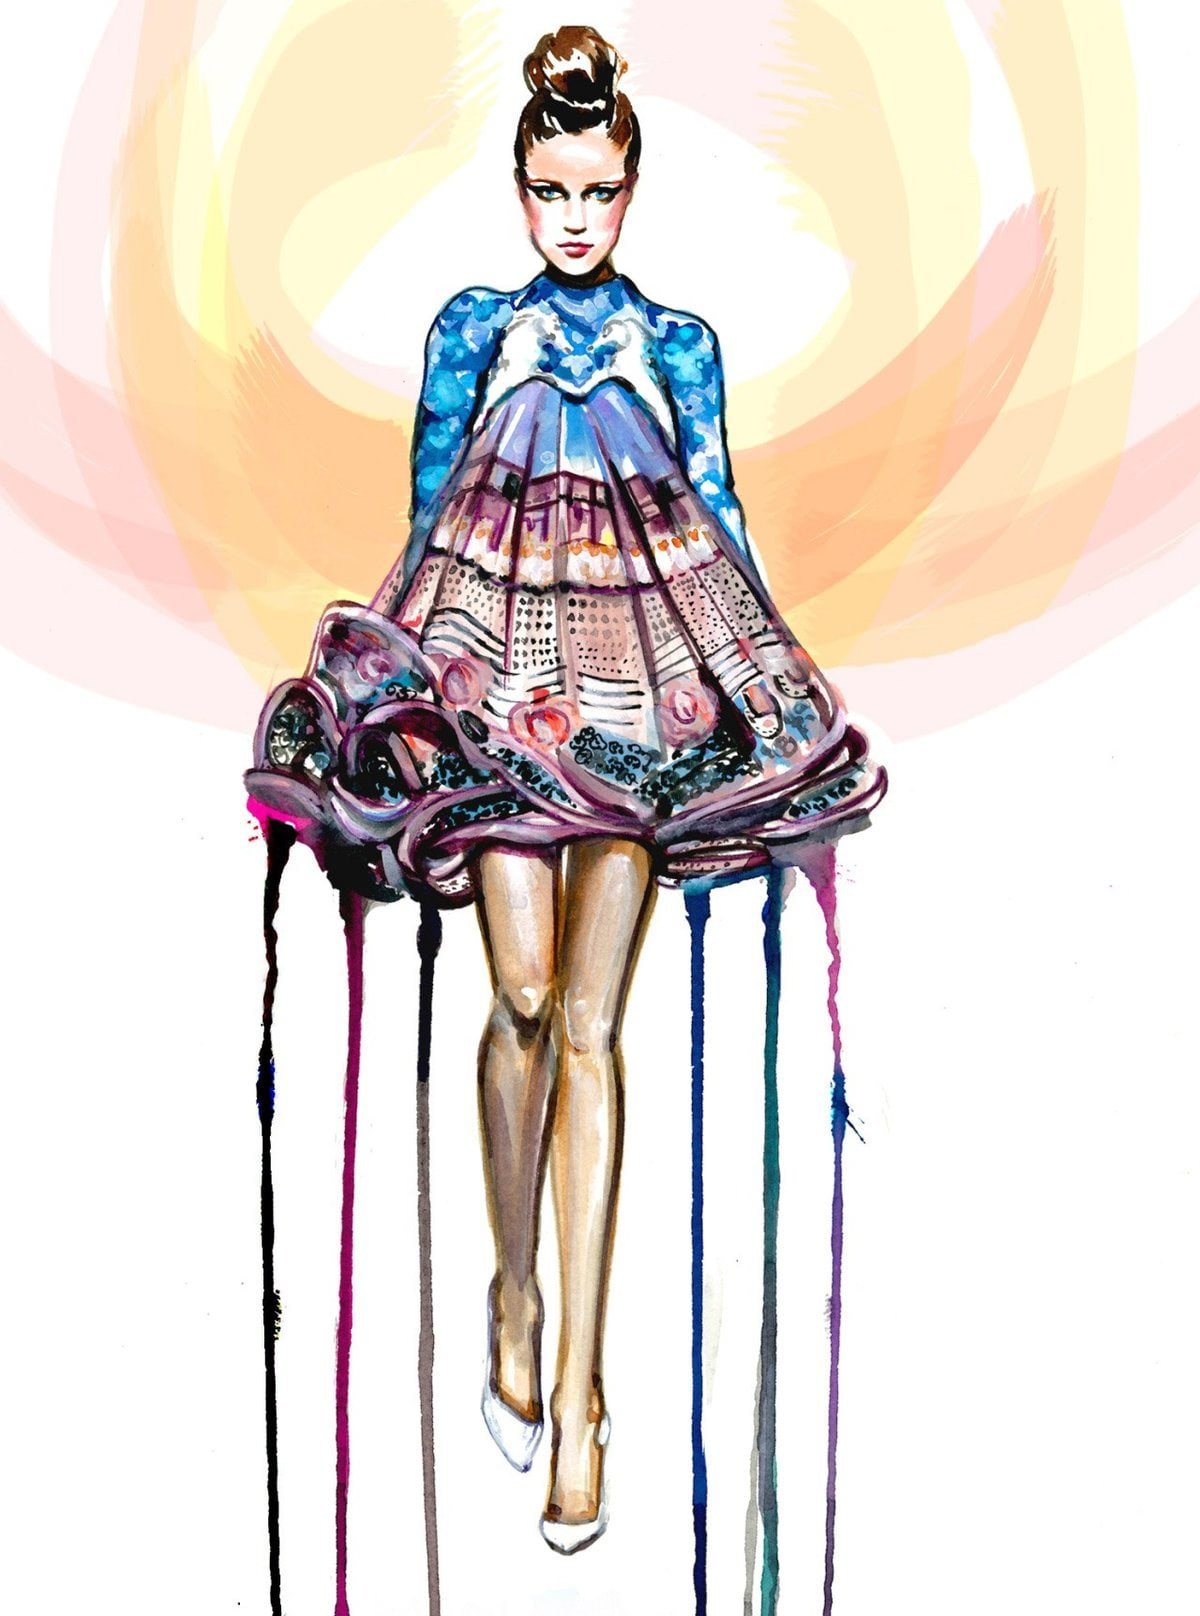 Дизайн современной одежды творческие эскизы. Фэшн иллюстрации Джона Гальяно. Дизайнер Hayden Williams. Иллюстрации в стиле фэшн.